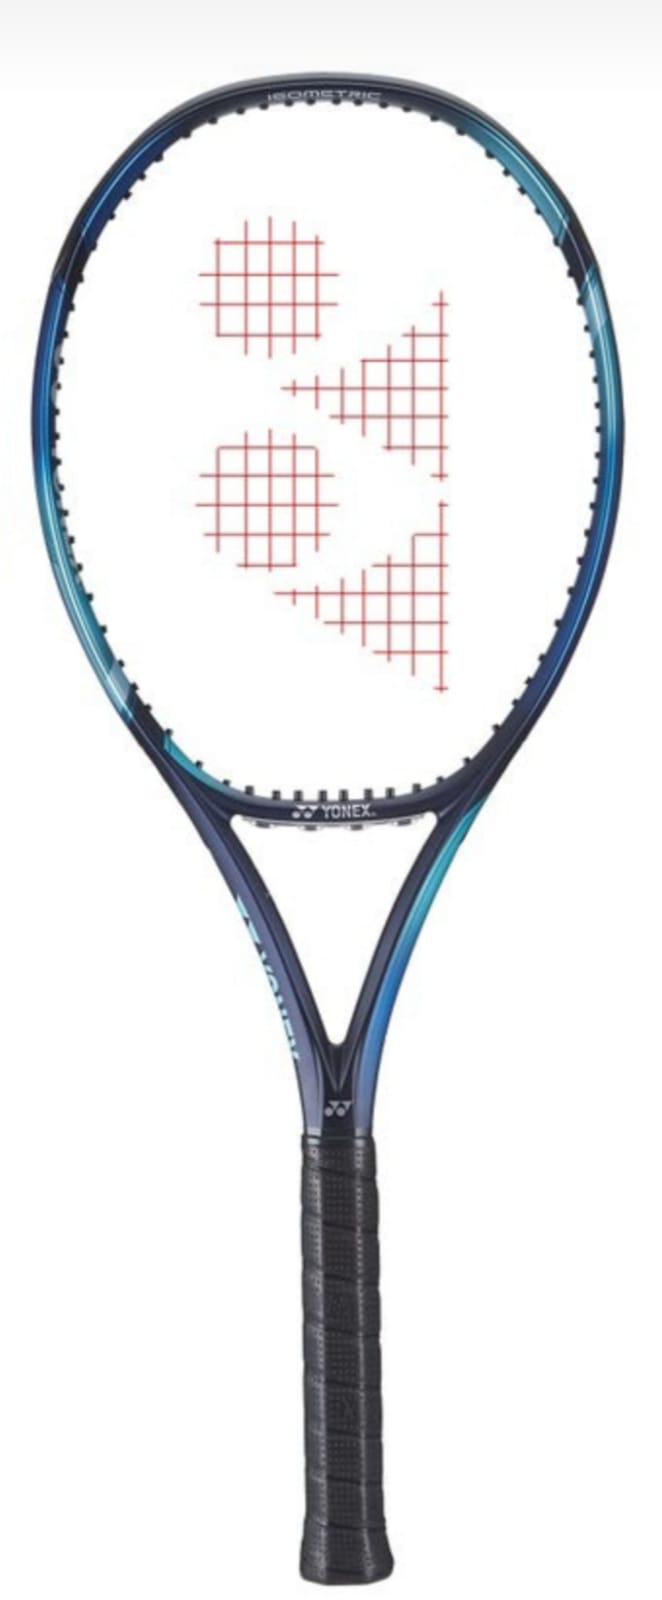 ¿Cuál es la marca de raquetas que utiliza Casper Ruud?